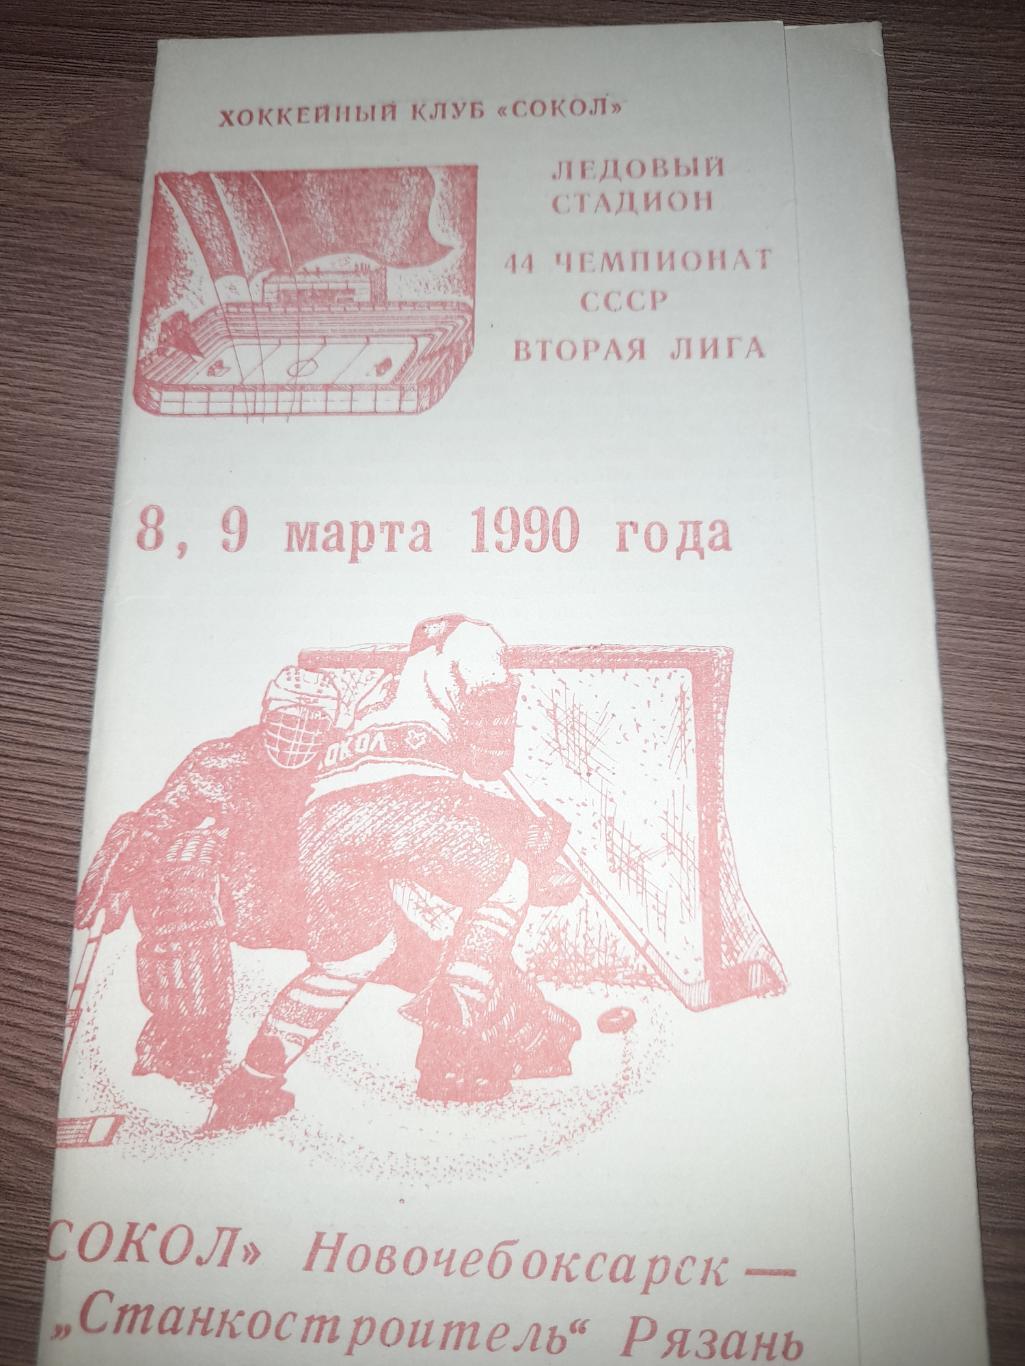 Сокол Новочебоксарск - Станкостроитель Рязань 1990